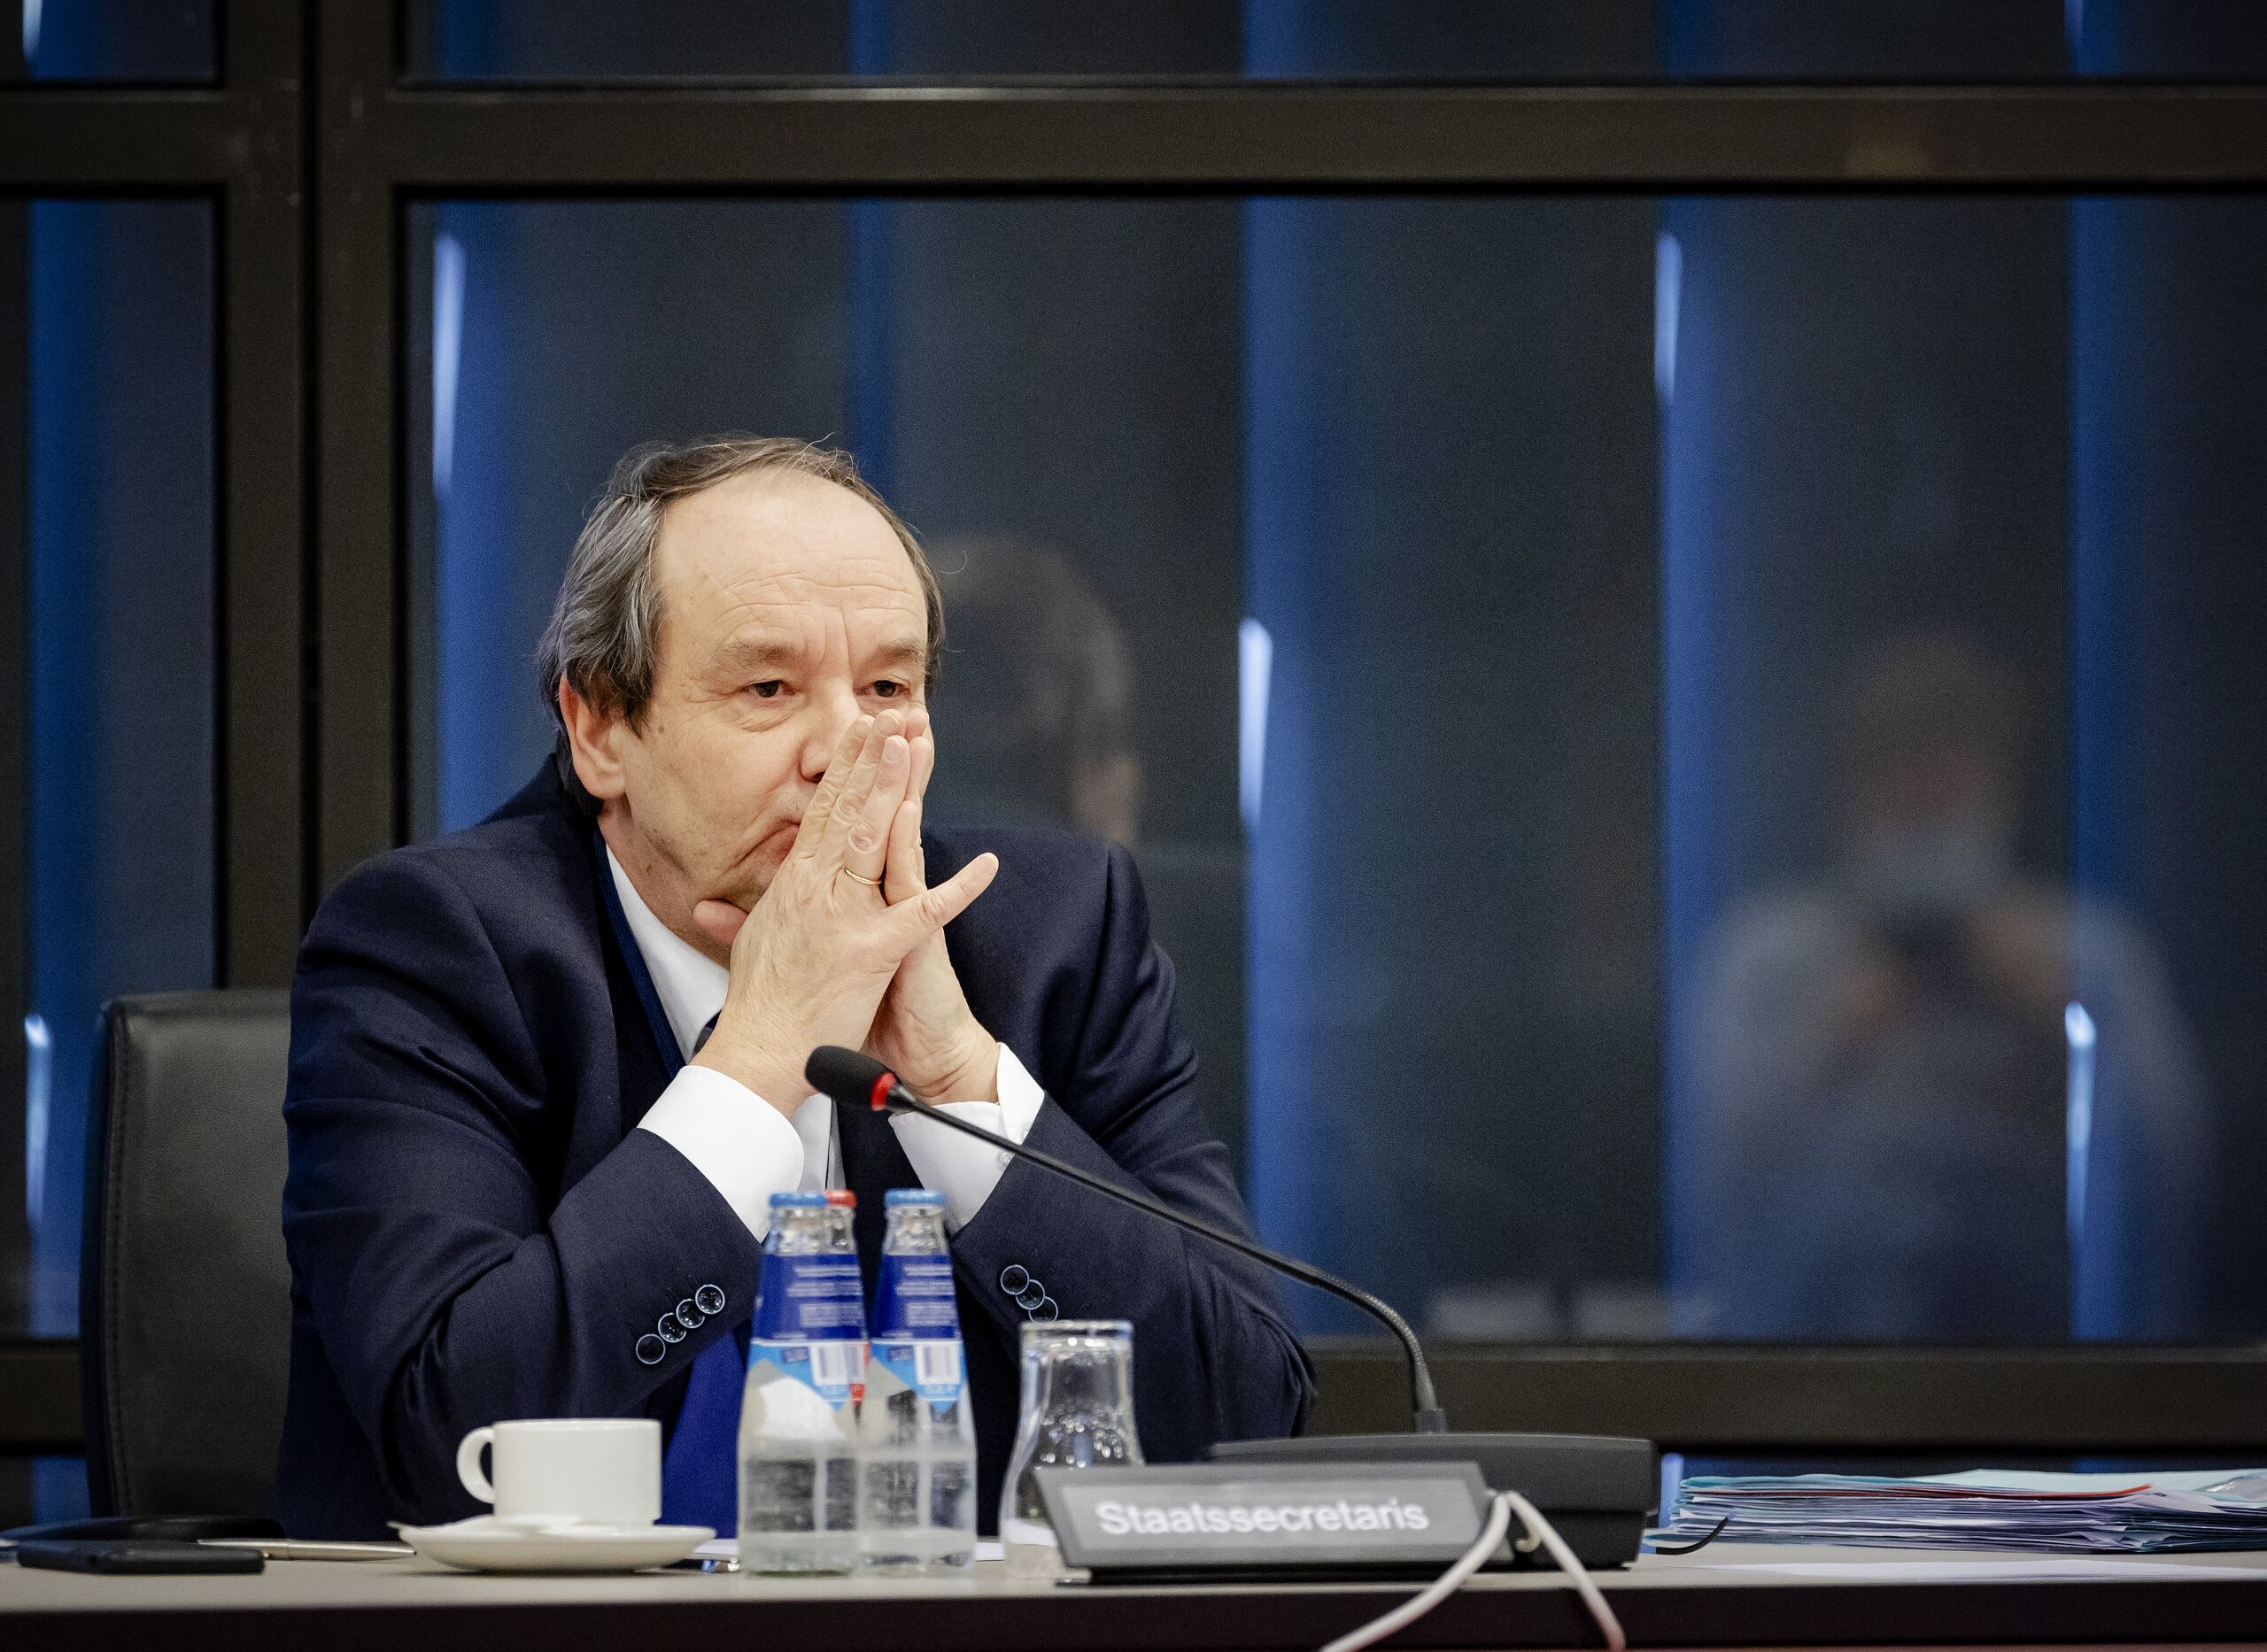 Demissionair staatssecretaris van Financien Hans Vijlbrief tijdens een overleg in de Tweede Kamer over de Belastingdienst.